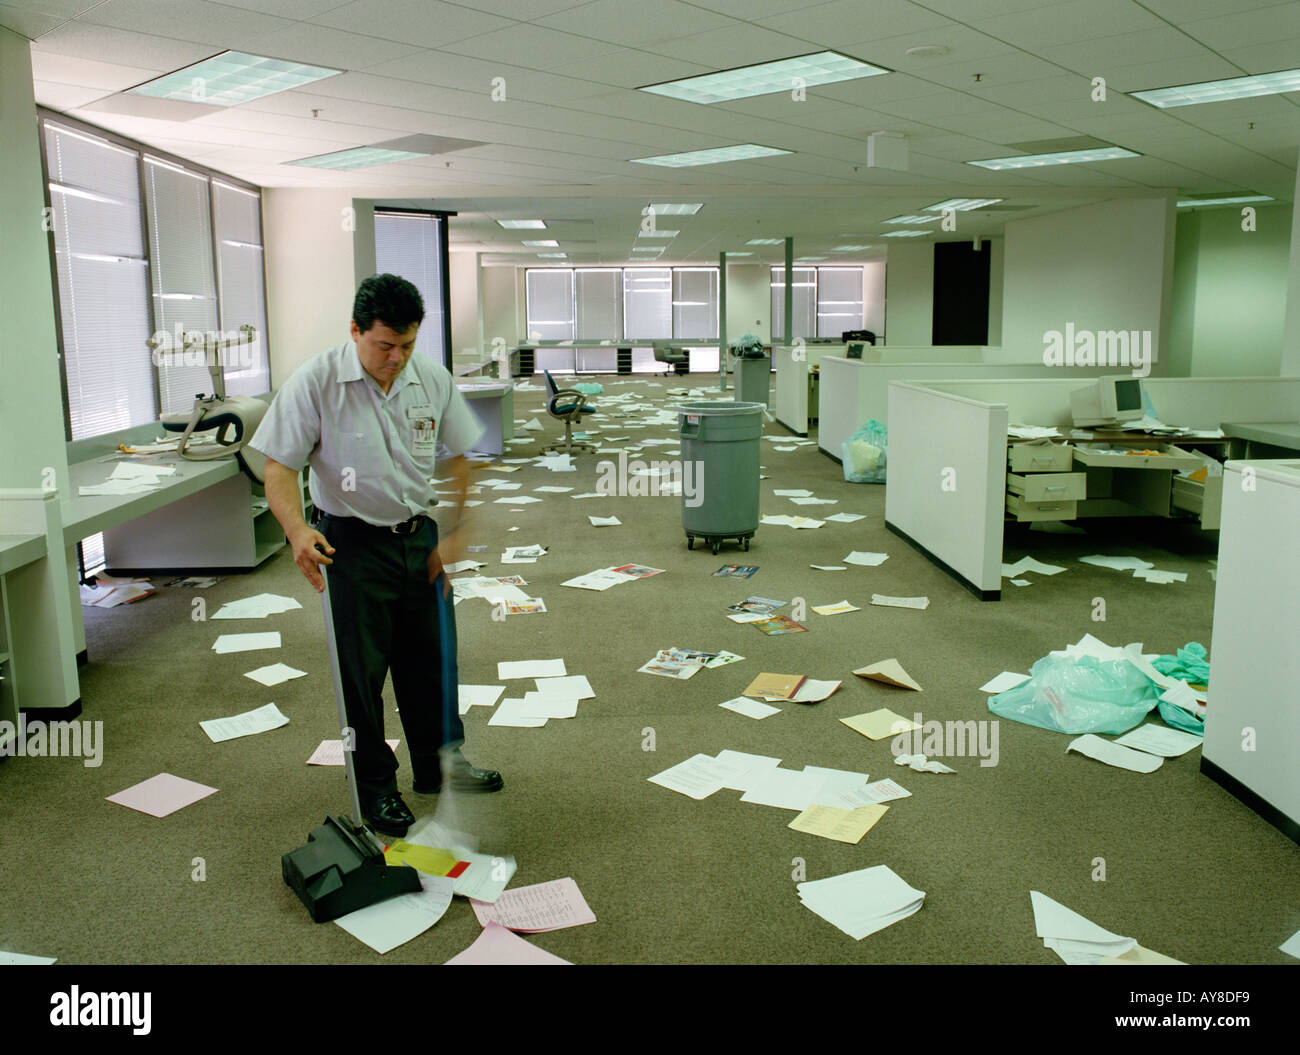 Hauswart fegt Papierkram durcheinander, nachdem Mitarbeiter von Highrise Büro gegangen sind Stockfoto